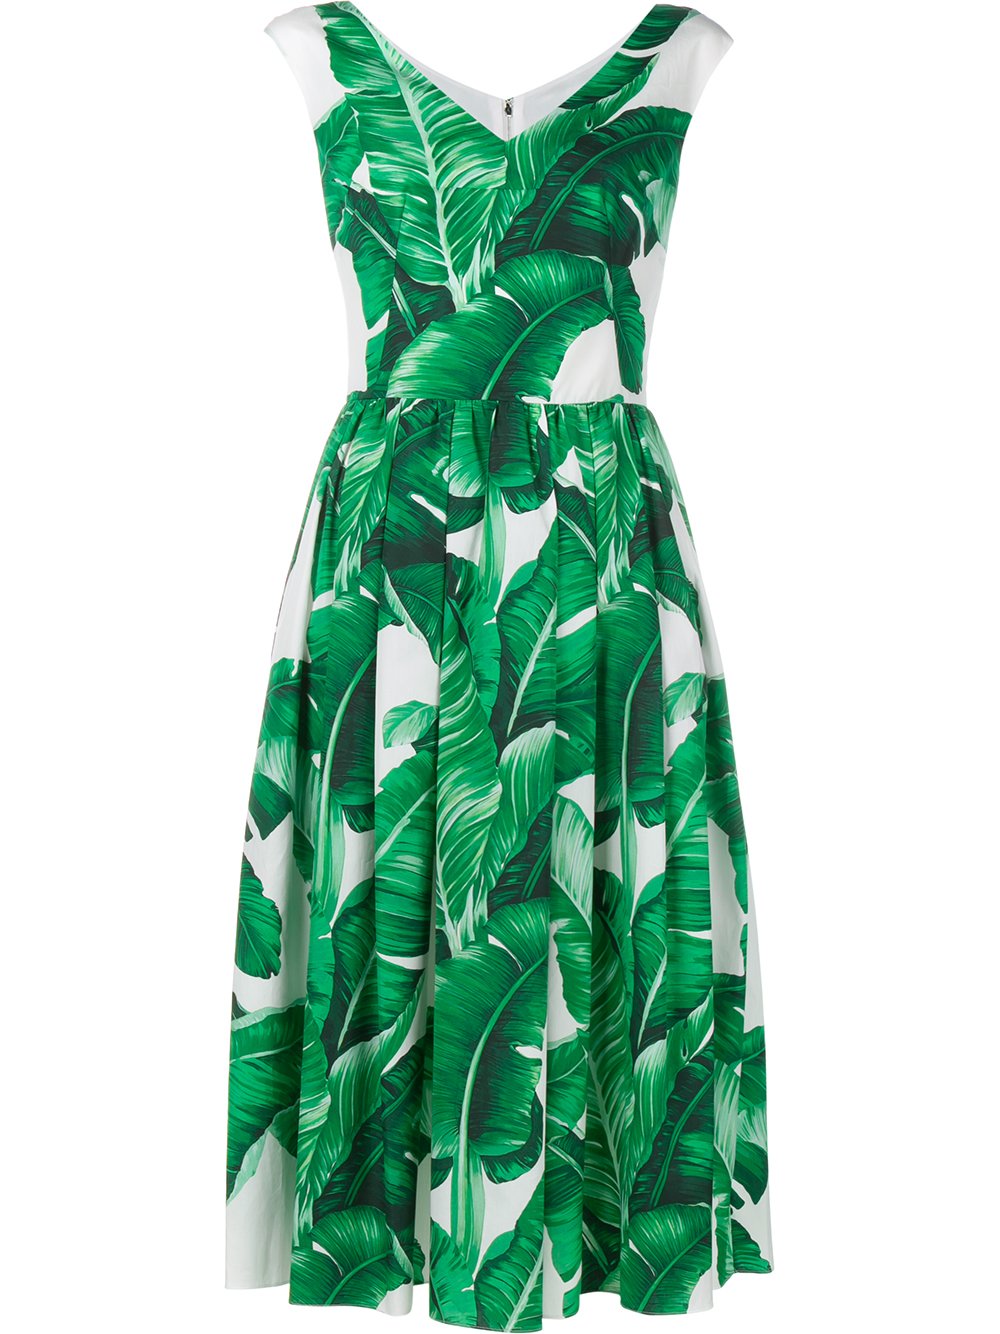 Дольче габбана зеленые. Зеленое платье Дольче Габбана. Платье Дольче Габбана с банановыми листьями. Платье дольчегаббан зеленое. Платье Дольче Габбана зеленые листья.